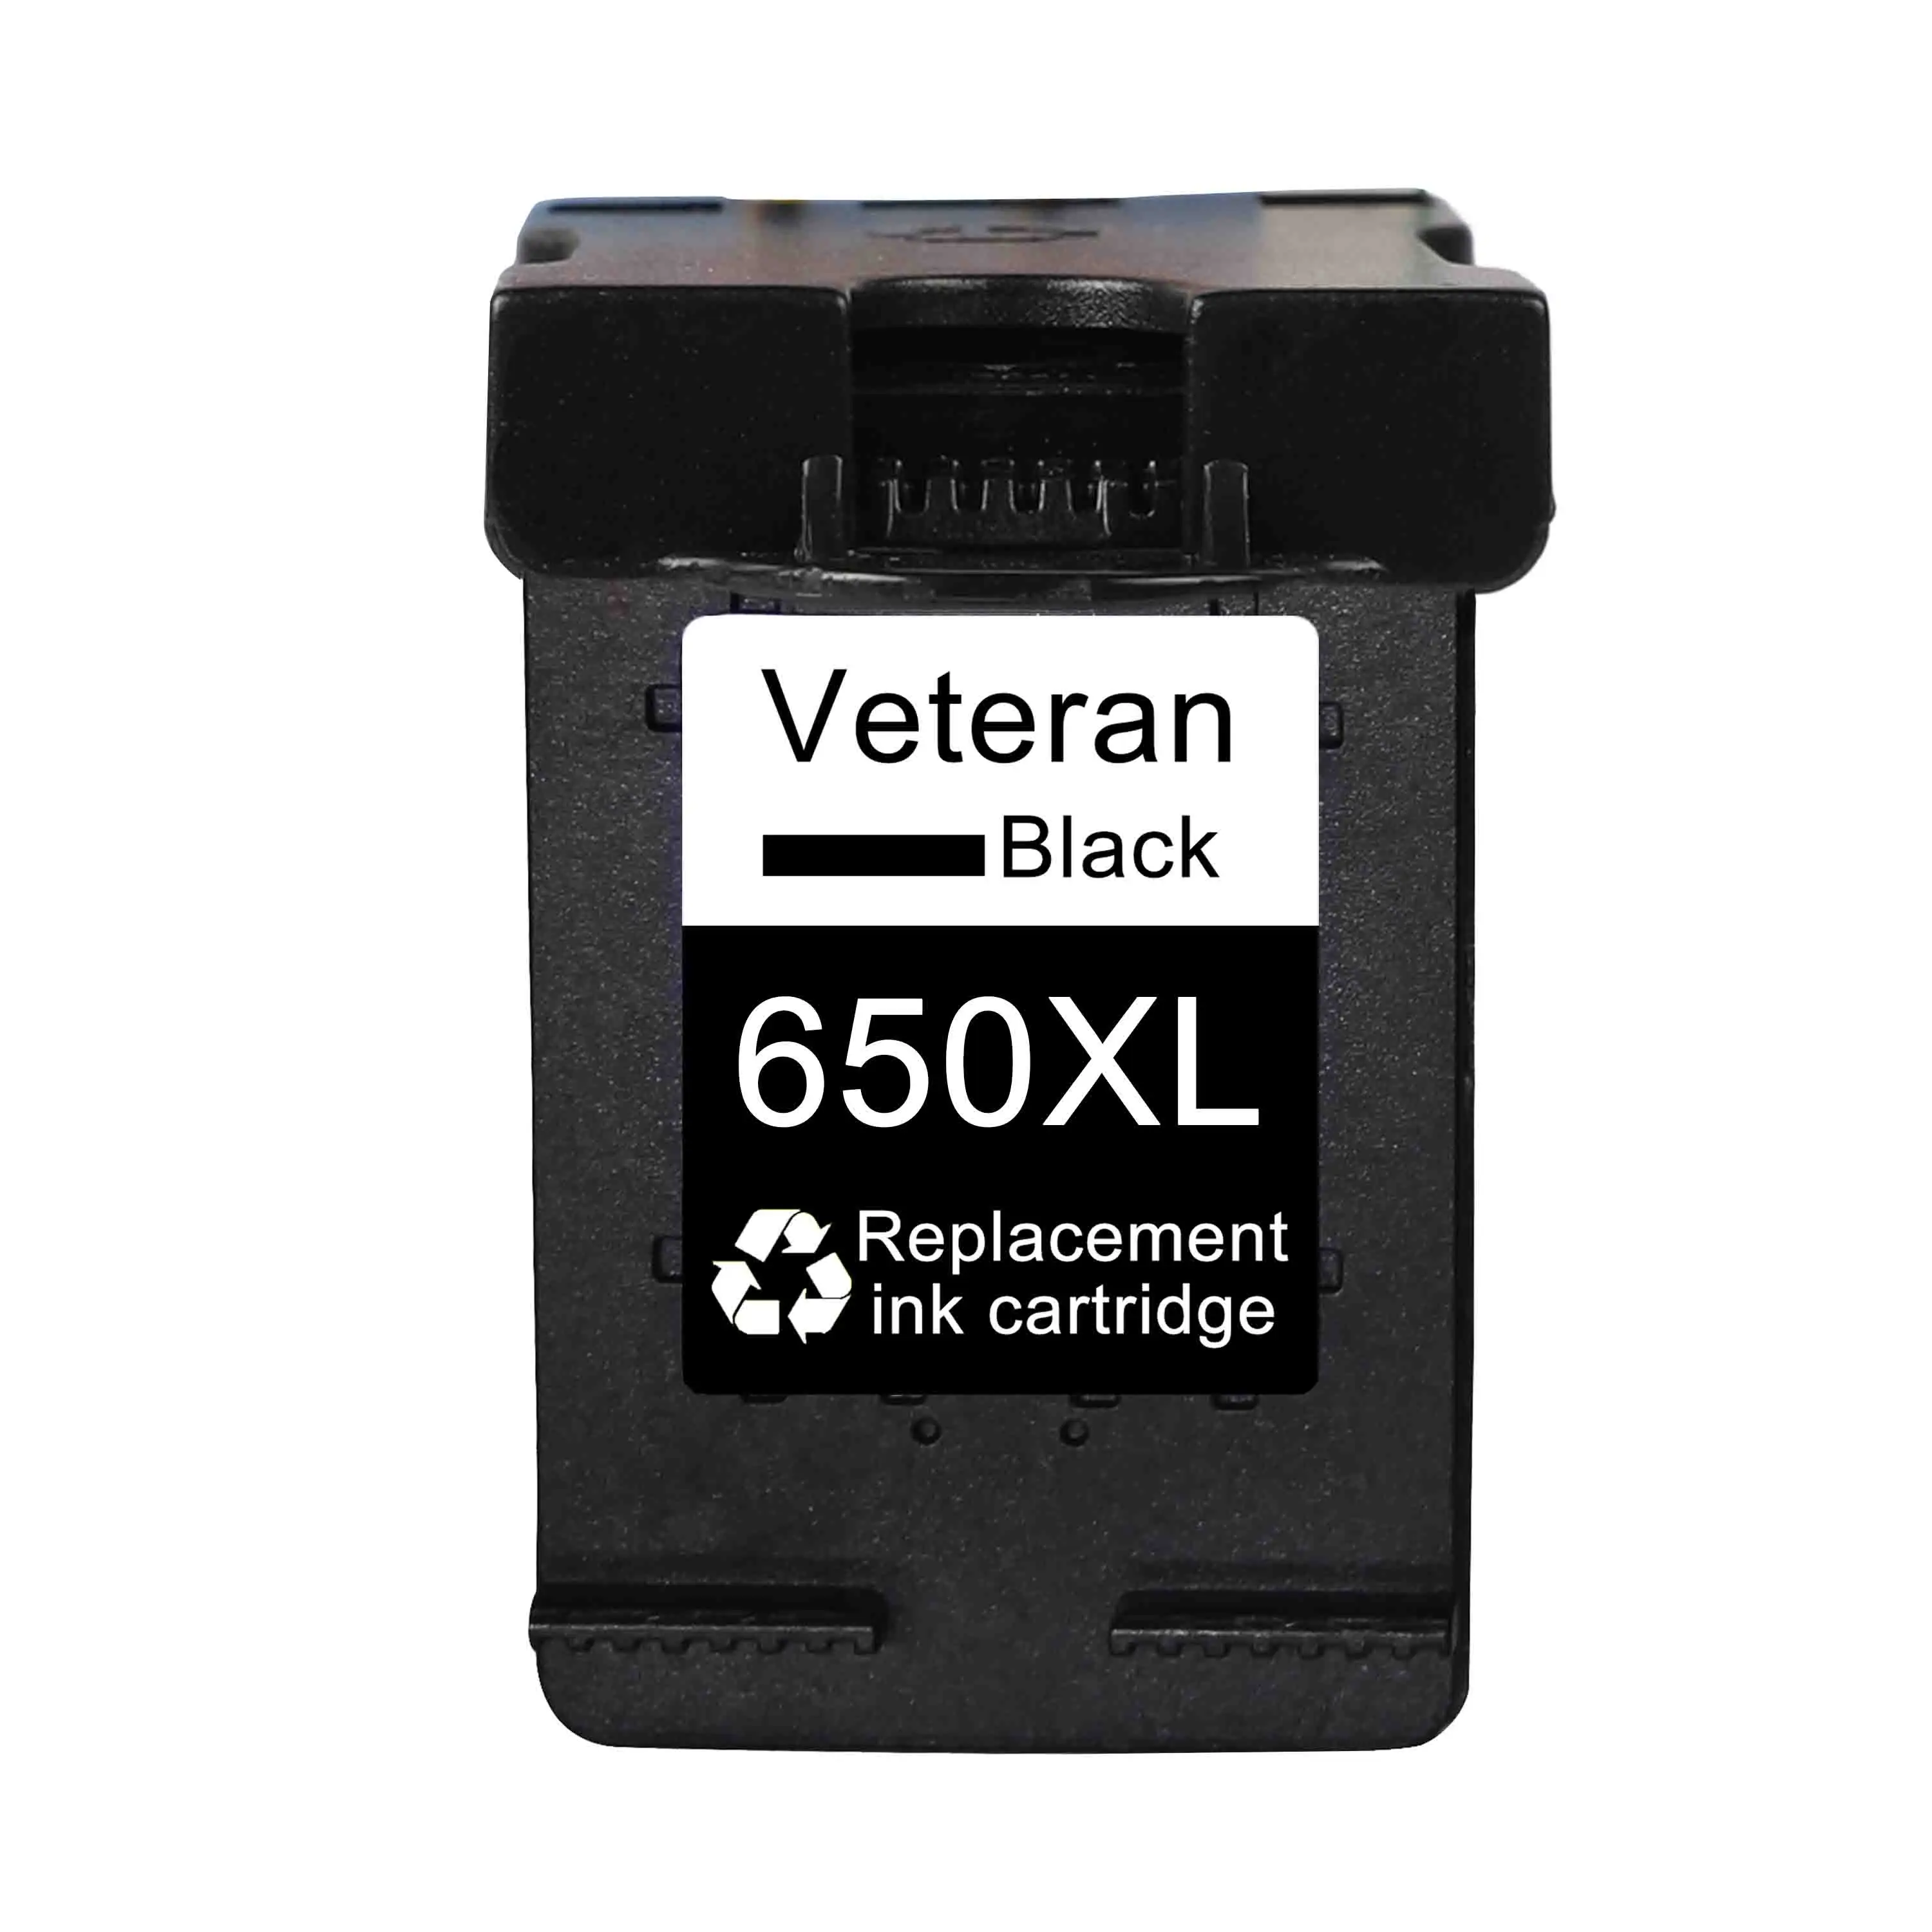 Ветеран 650XL сменный картридж для принтера для hp 650 для hp 650 XL hp 650xl для hp Deskjet 1015 1515 2515 2545 2645 3515 4645 принтер - Цвет: Black